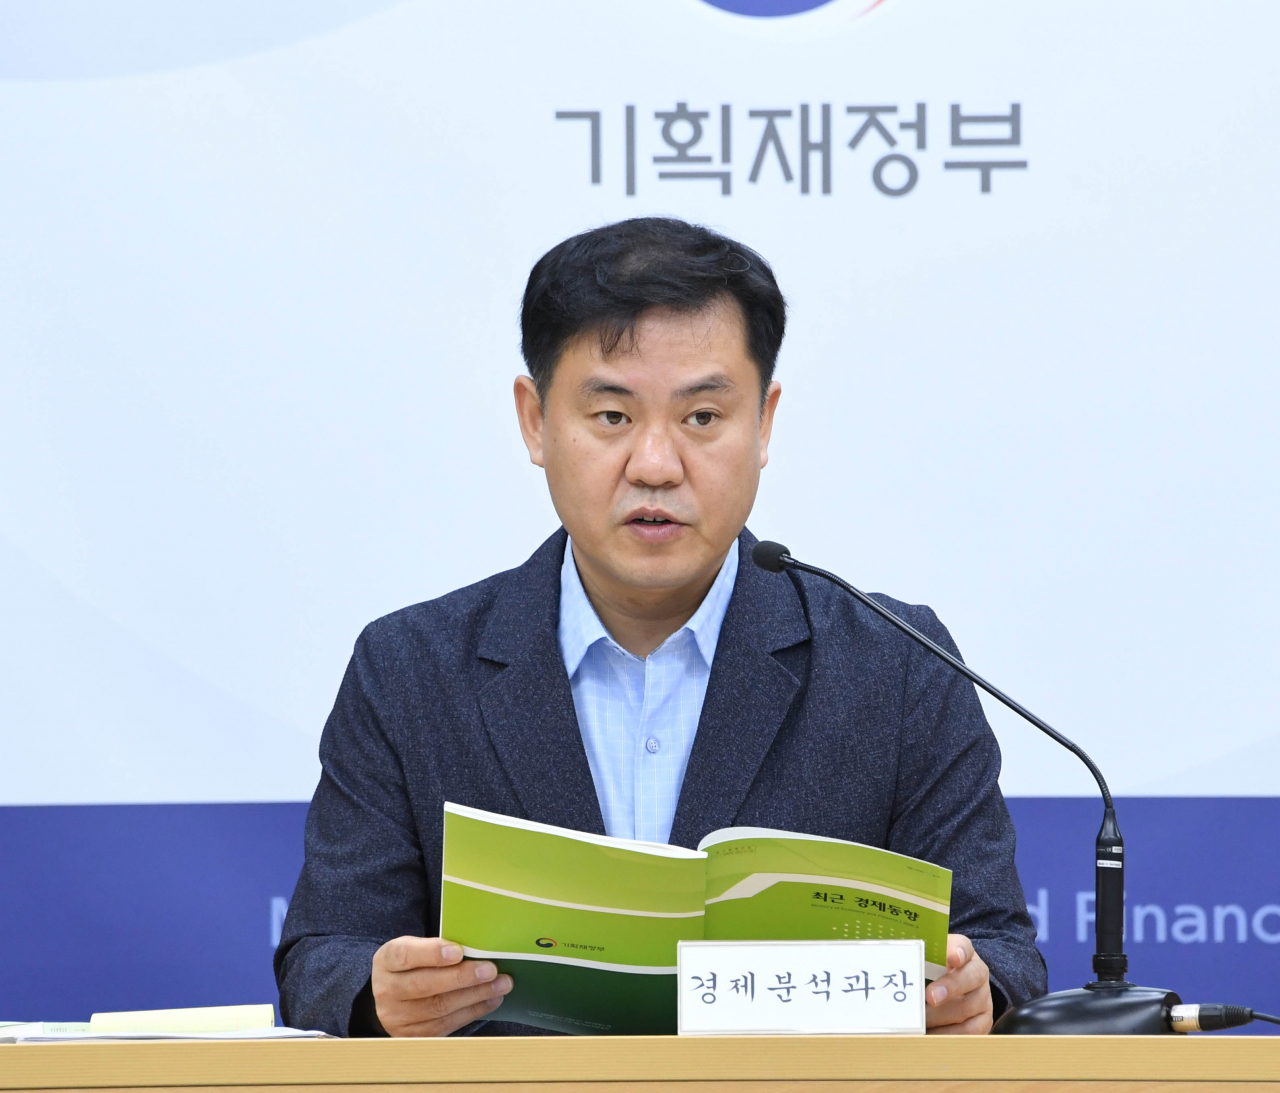 김영훈 기획재정부 경제분석과장이 14일 정부세종청사에서 ‘2020년 8월 최근경제동향’을 발표하고 있다. / 사진=기획재정부